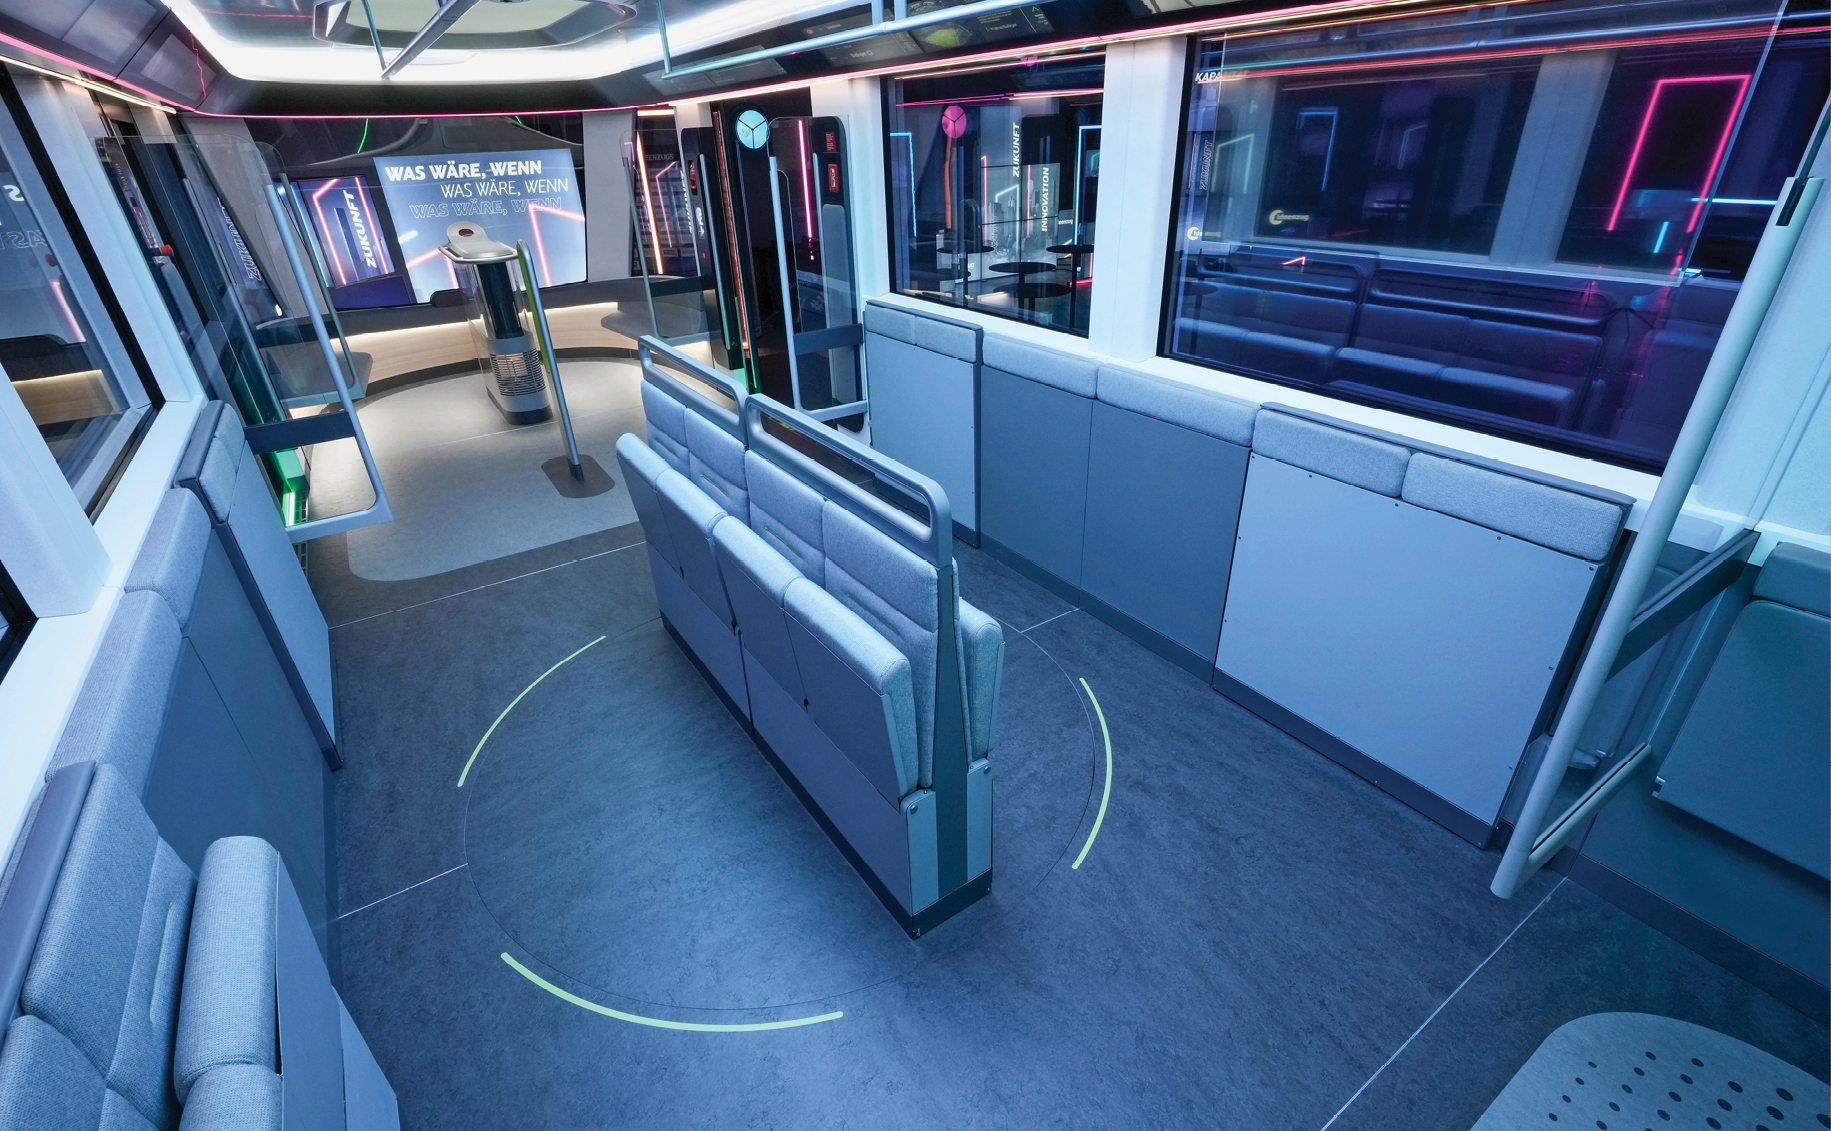 Mehr Kapazität auf Knopfdruck erlebt man im Ideenzug City, dem 1:1-Modell einer künftigen S-Bahn